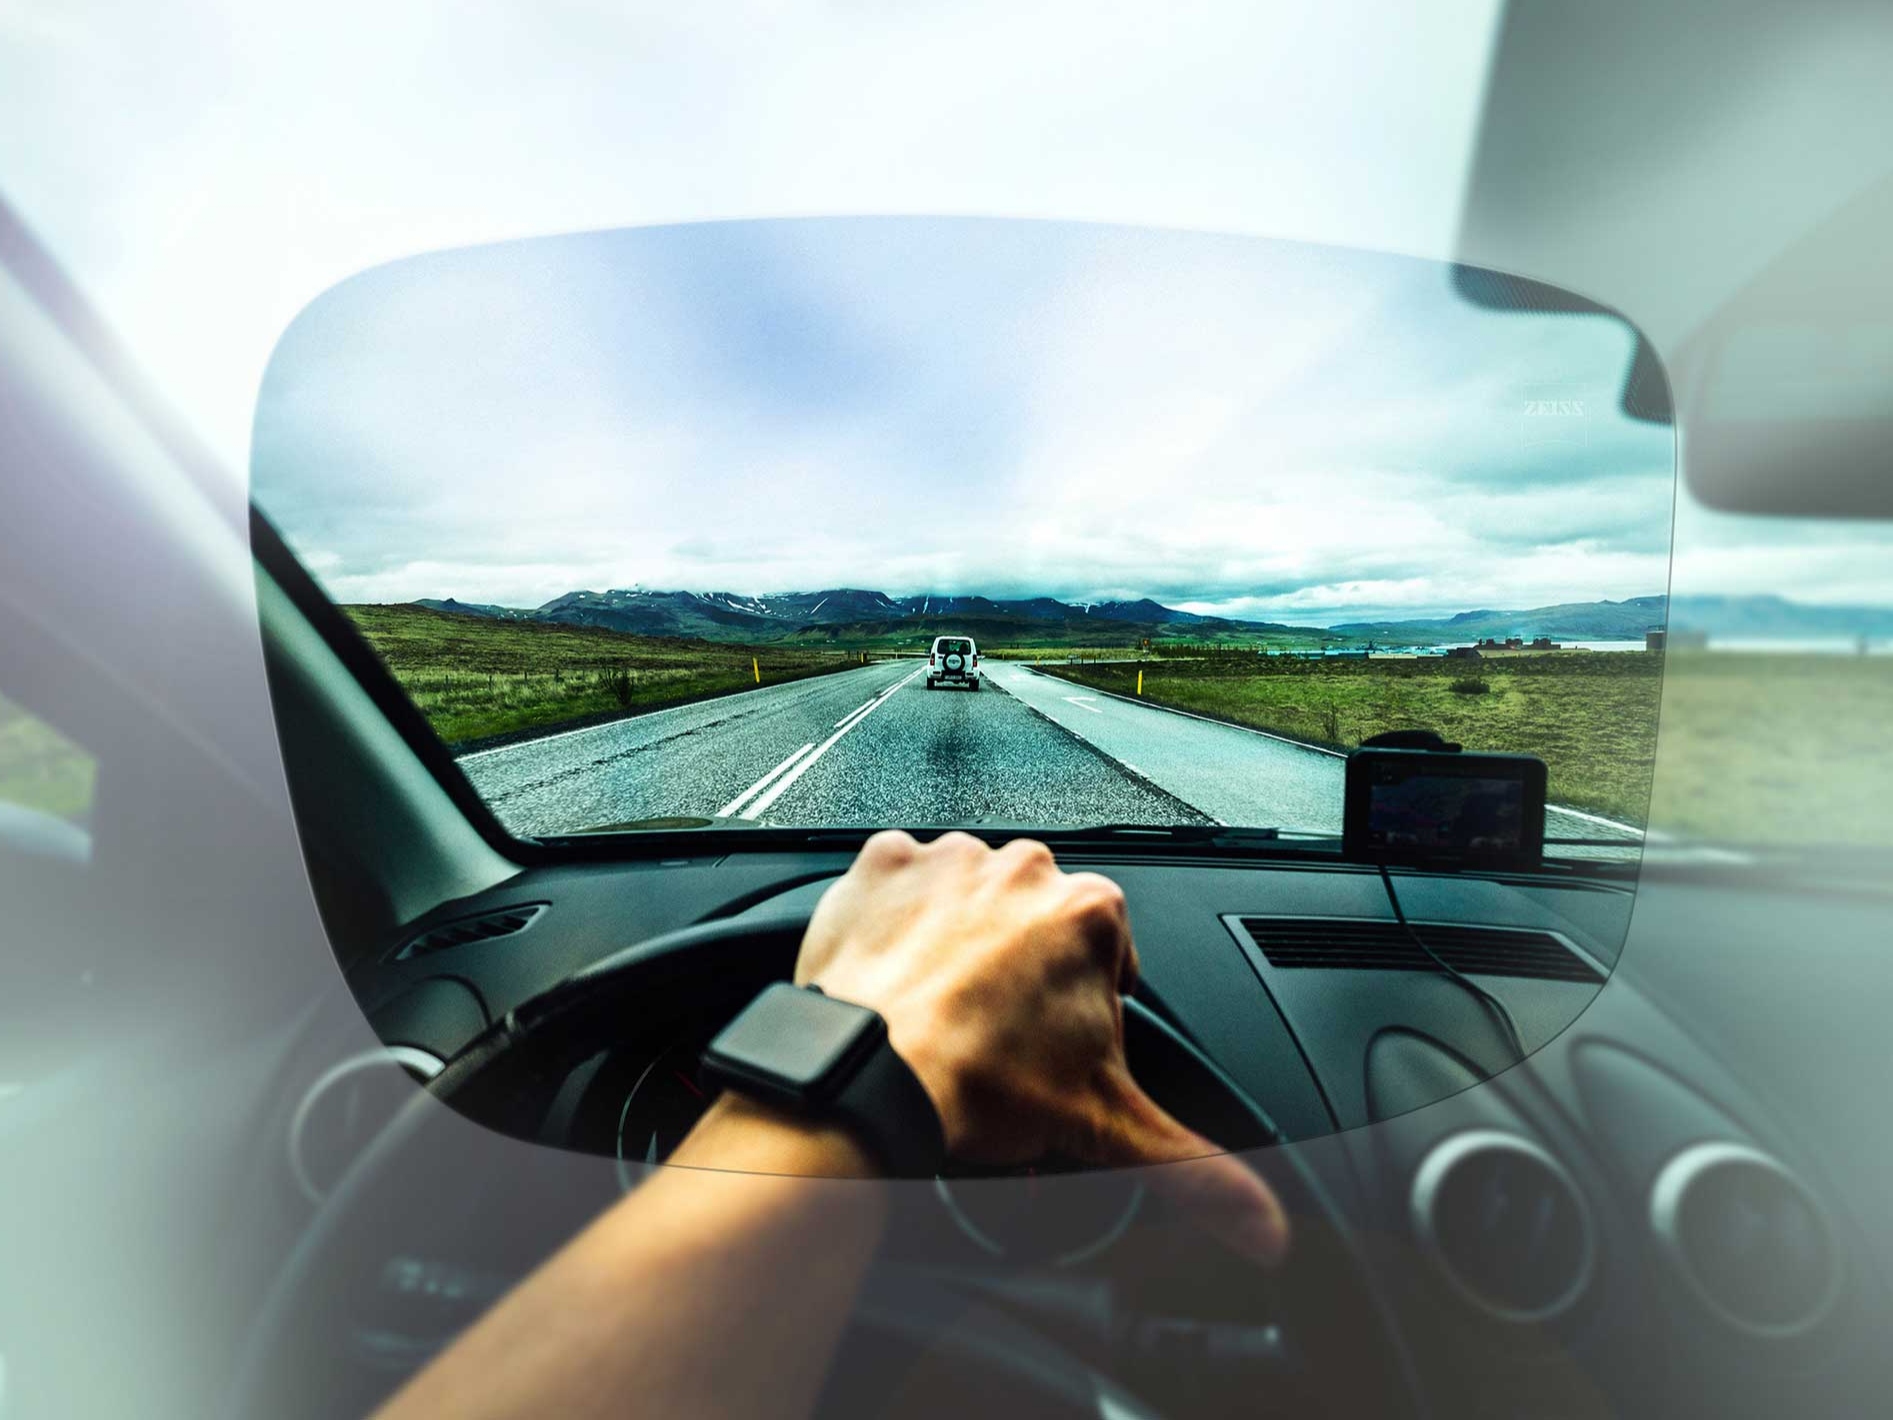 Une vision claire pour le conducteur lorsqu’il regarde la rue et le paysage grâce aux verres ZEISS de la collection Skylet